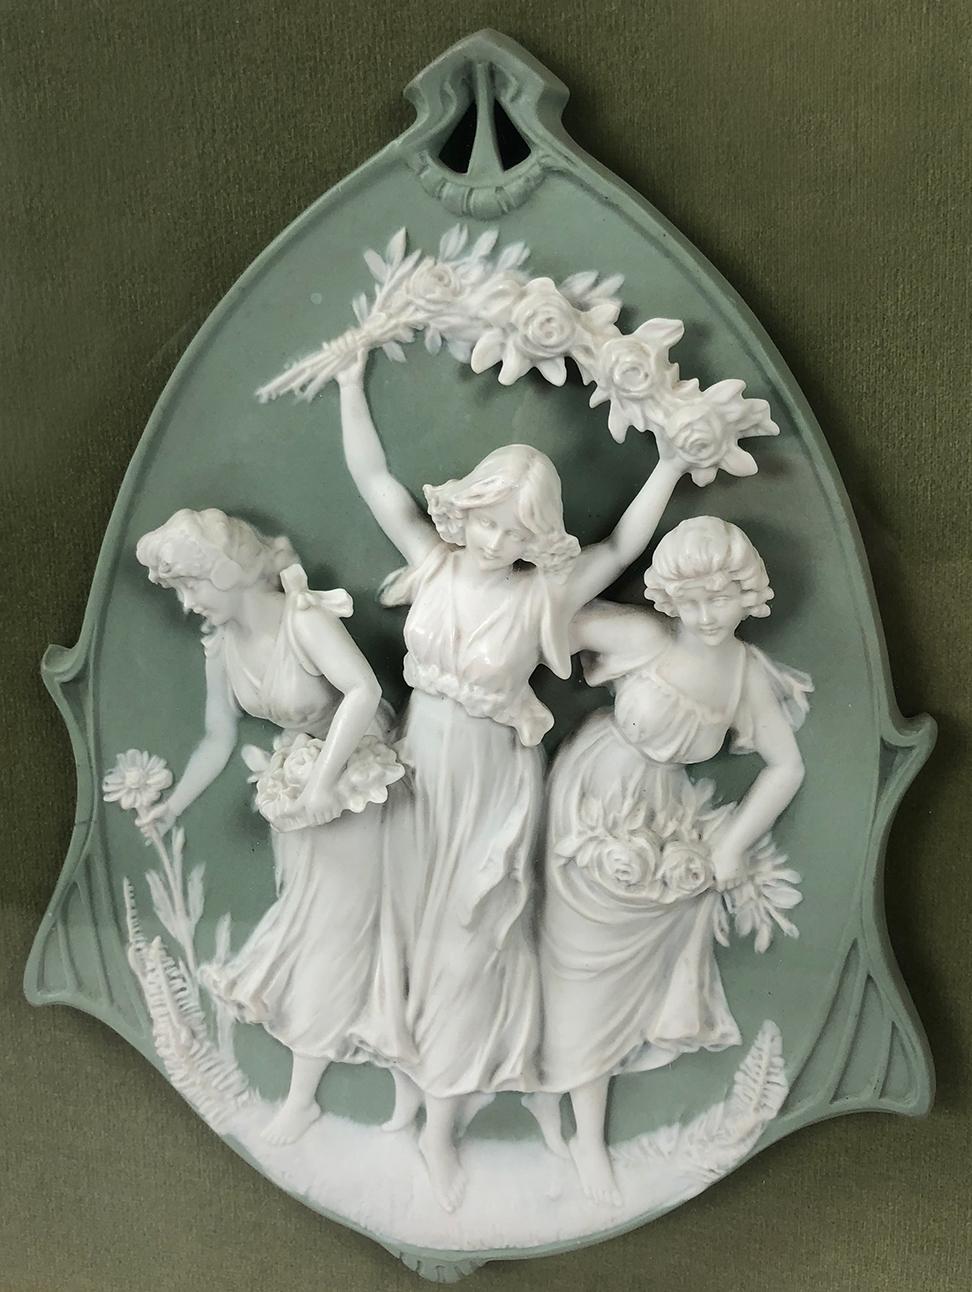 Un camée en relief encadré en porcelaine biscuit Jasperware avec trois femmes dansant et cueillant des fleurs. Probablement une pièce allemande du 18e/XIXe siècle en jaspe de type Wedgwood. Cette pièce est encadrée dans un cadre flottant en verre